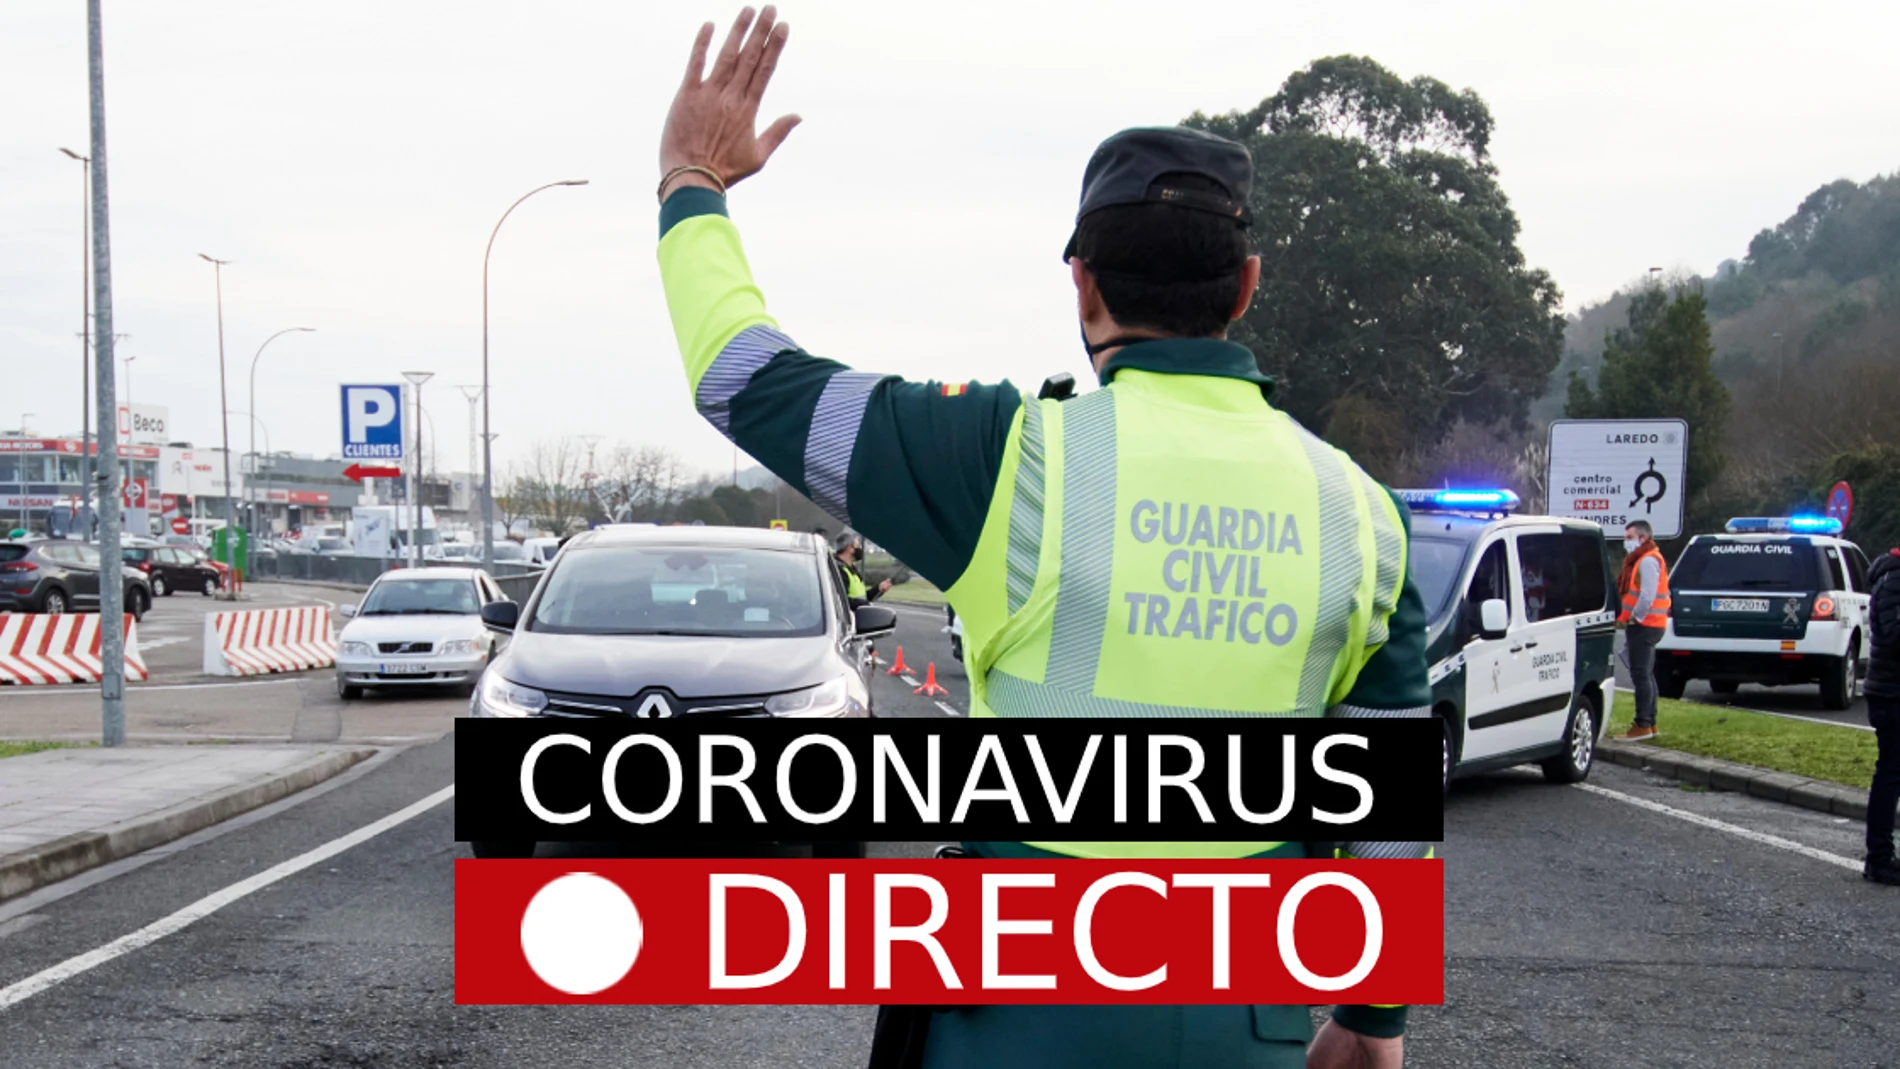 Restricciones por COVID-19 | Medidas y confinamiento perimetral en España y Madrid por coronavirus, en directo